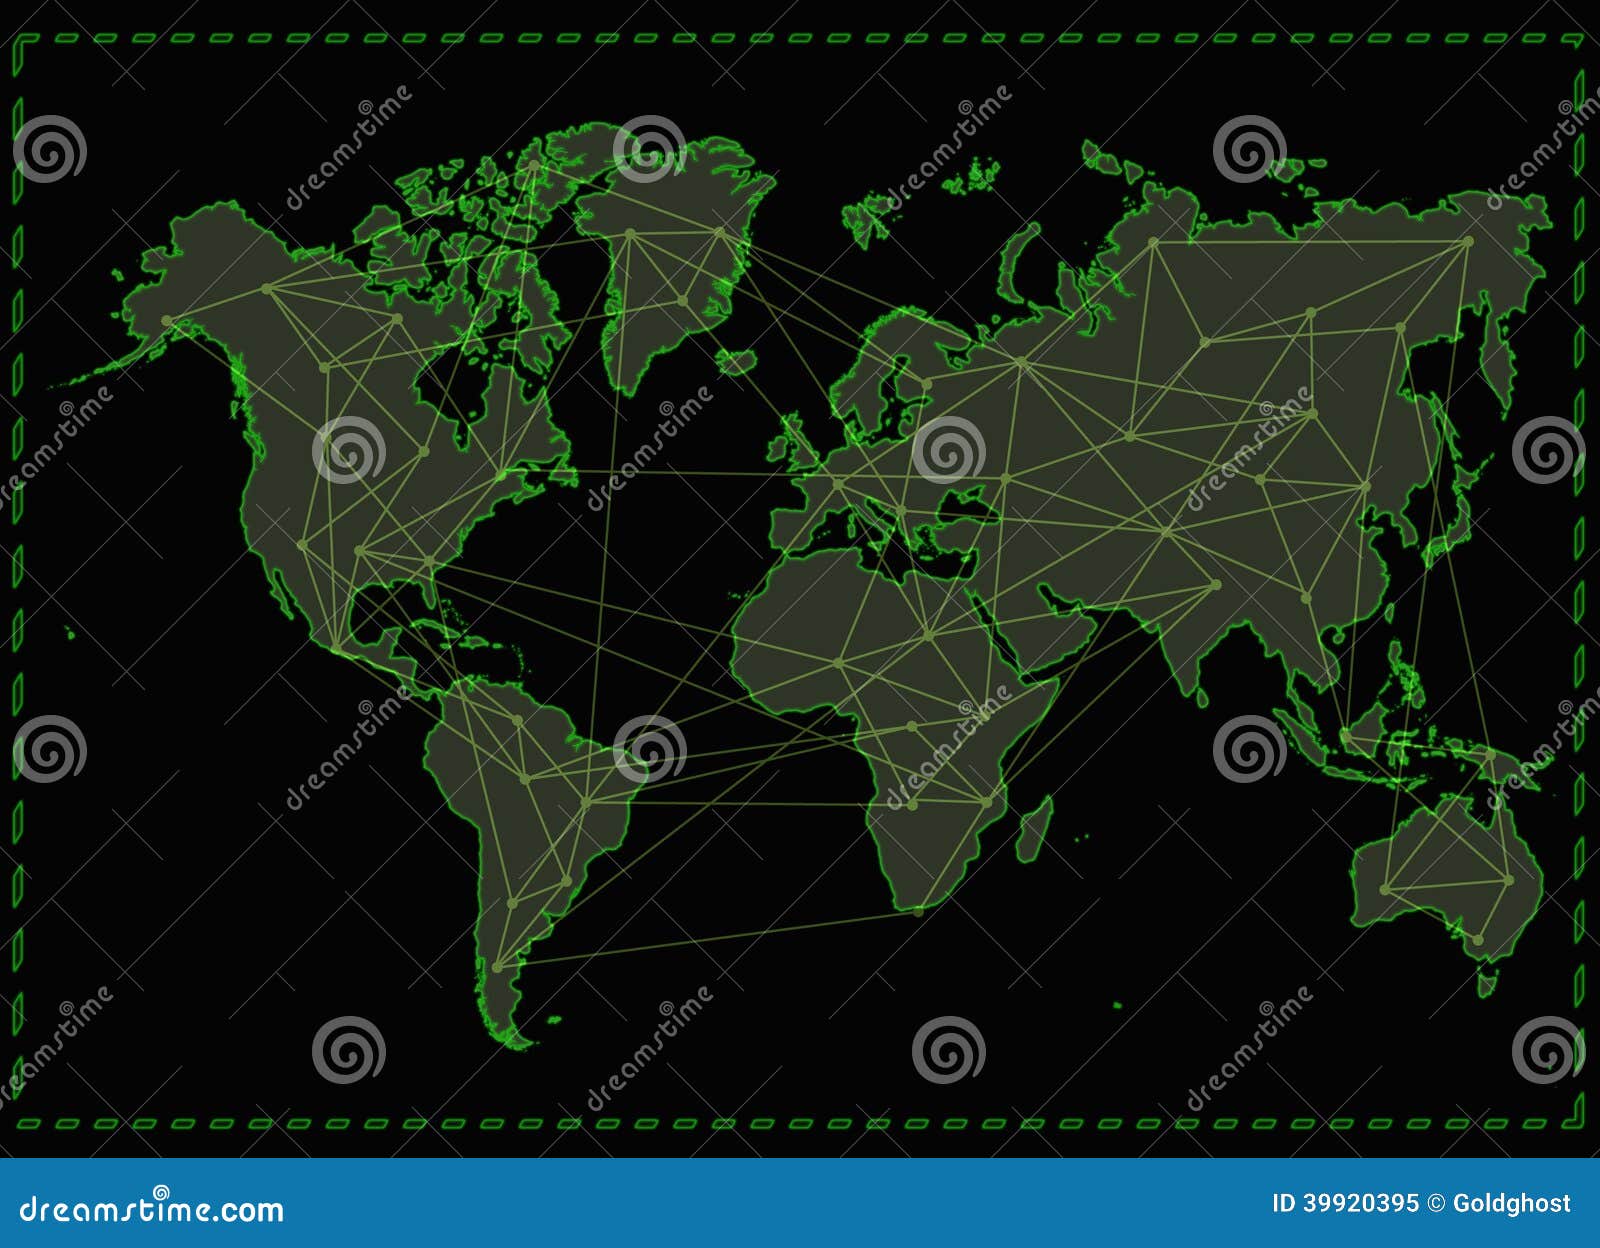 internet map wallpaper